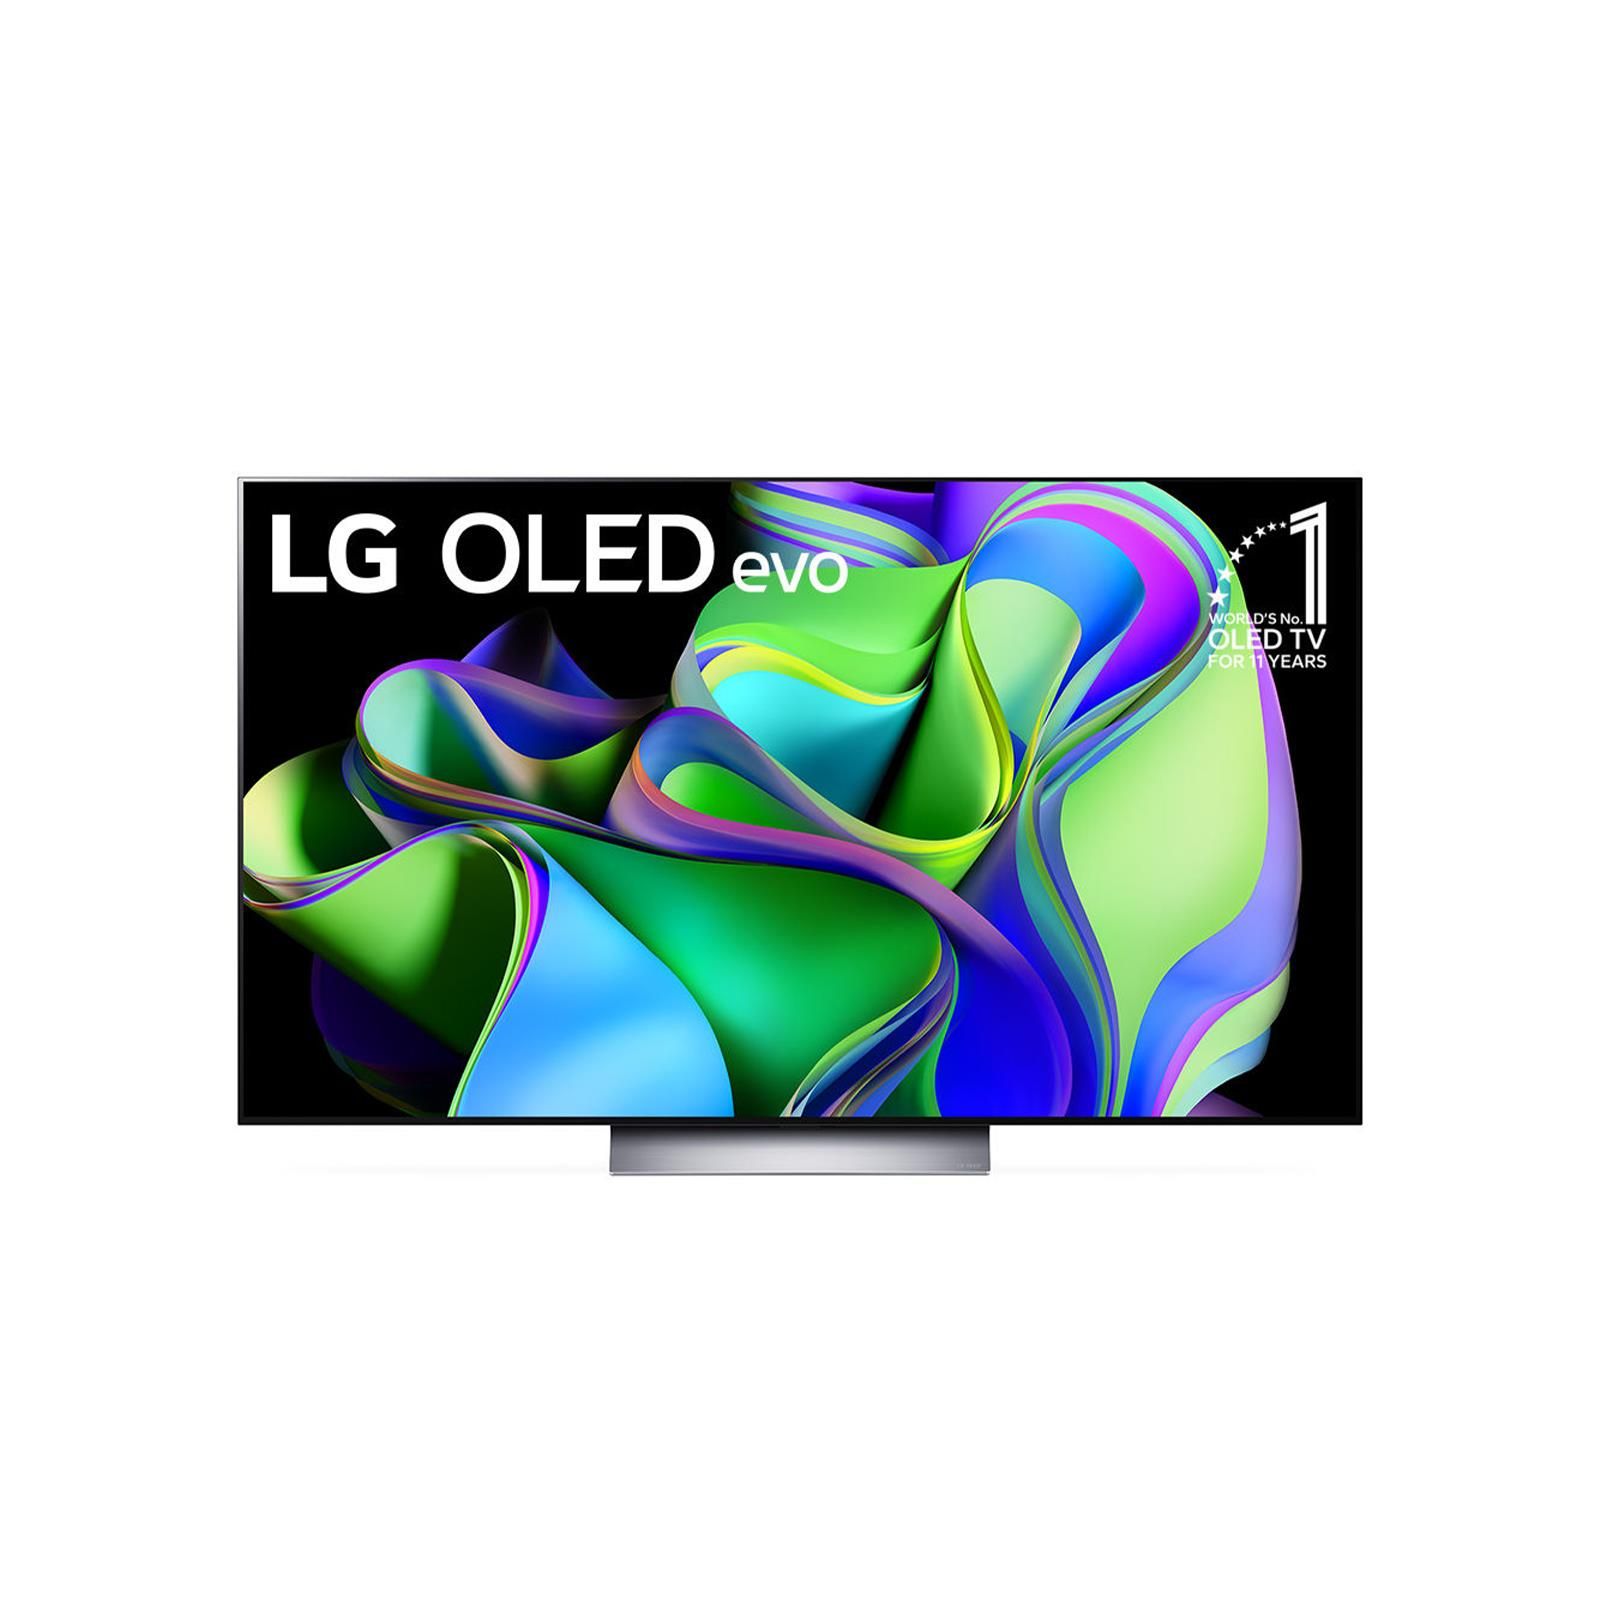 LG OLED EVO TV